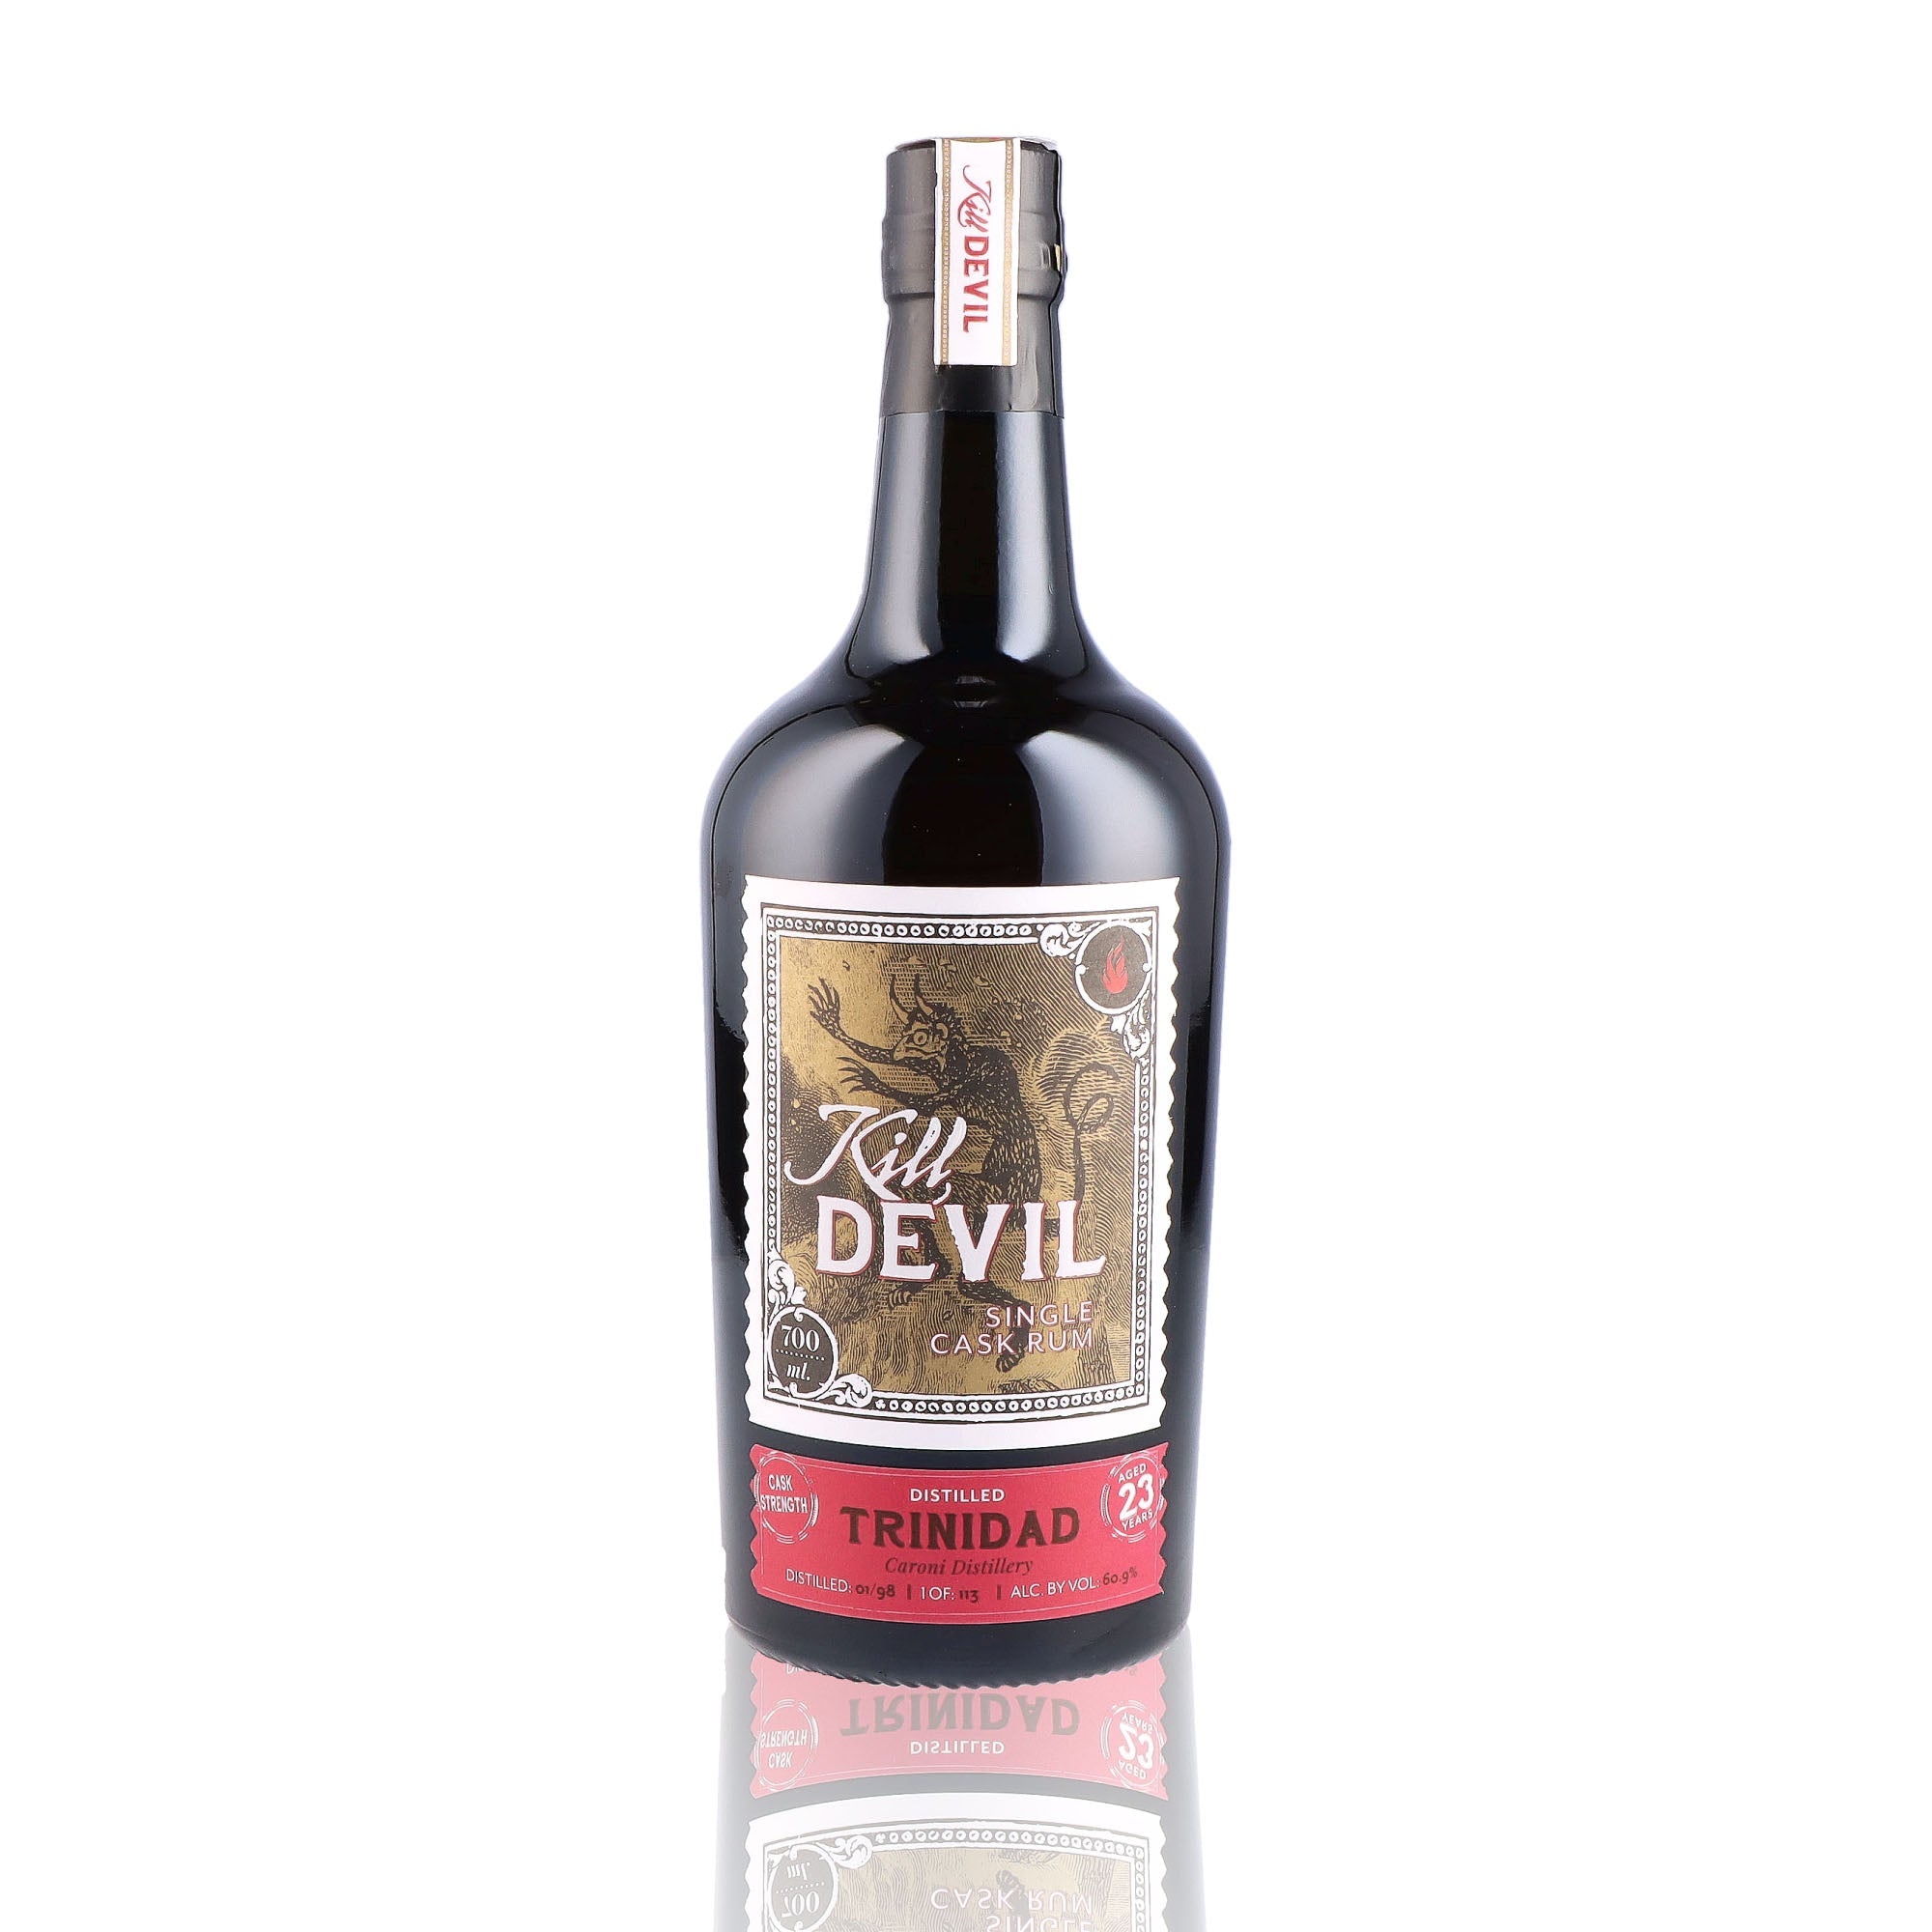 Une bouteille de rhum vieux, de la marque Kill Devil, nommée Trinidad 23 ans Single Cask.